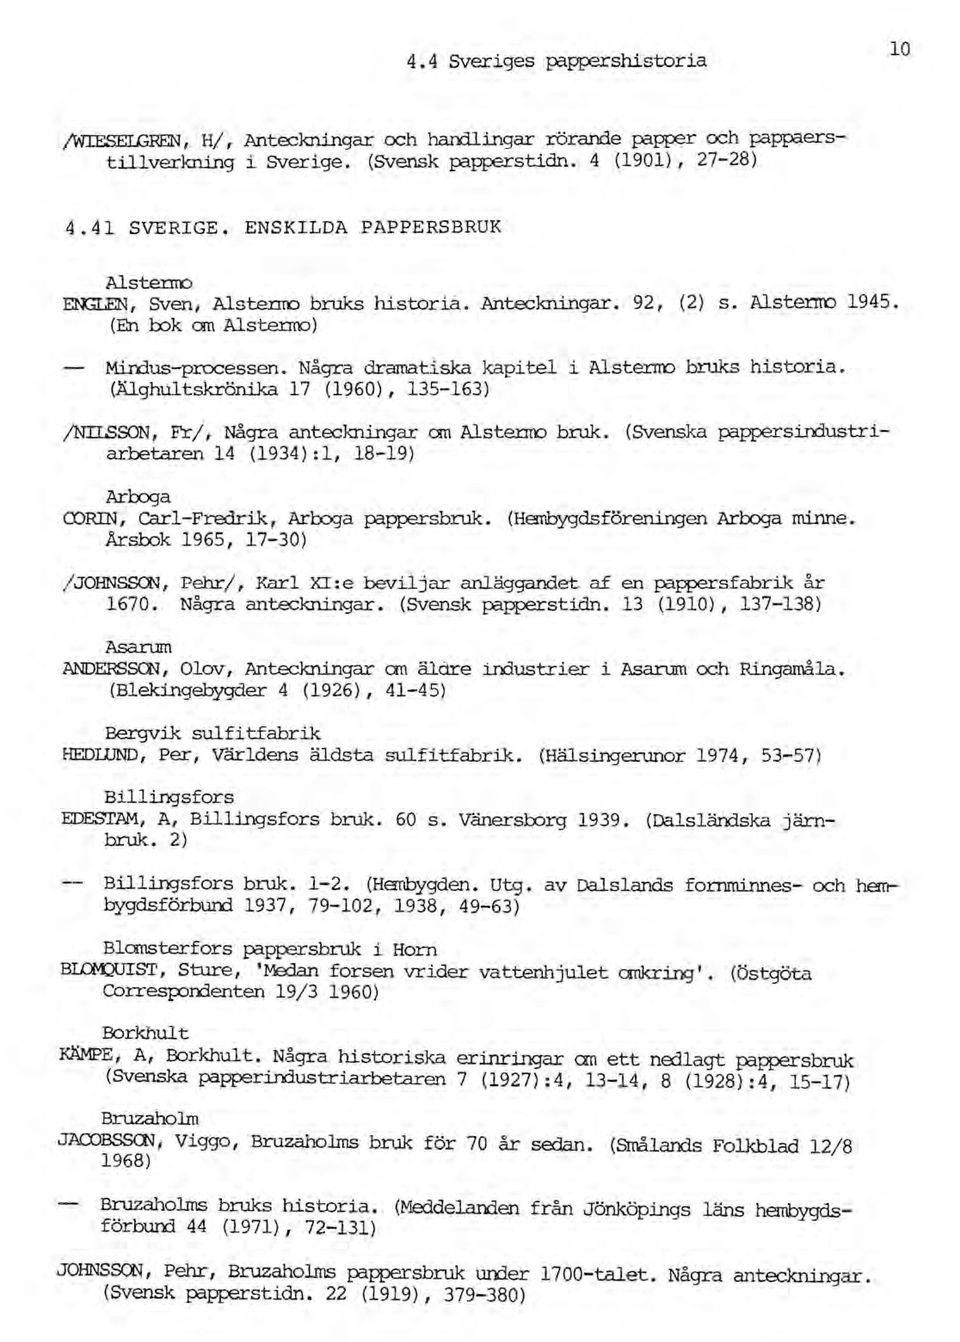 Några dramatiska kapitel i Alsterno bruks historia. (Älghultskränika 17 (1960),135-163) /NIlSSON, Fr/, Några anteckningar cm Alstenro bruk.